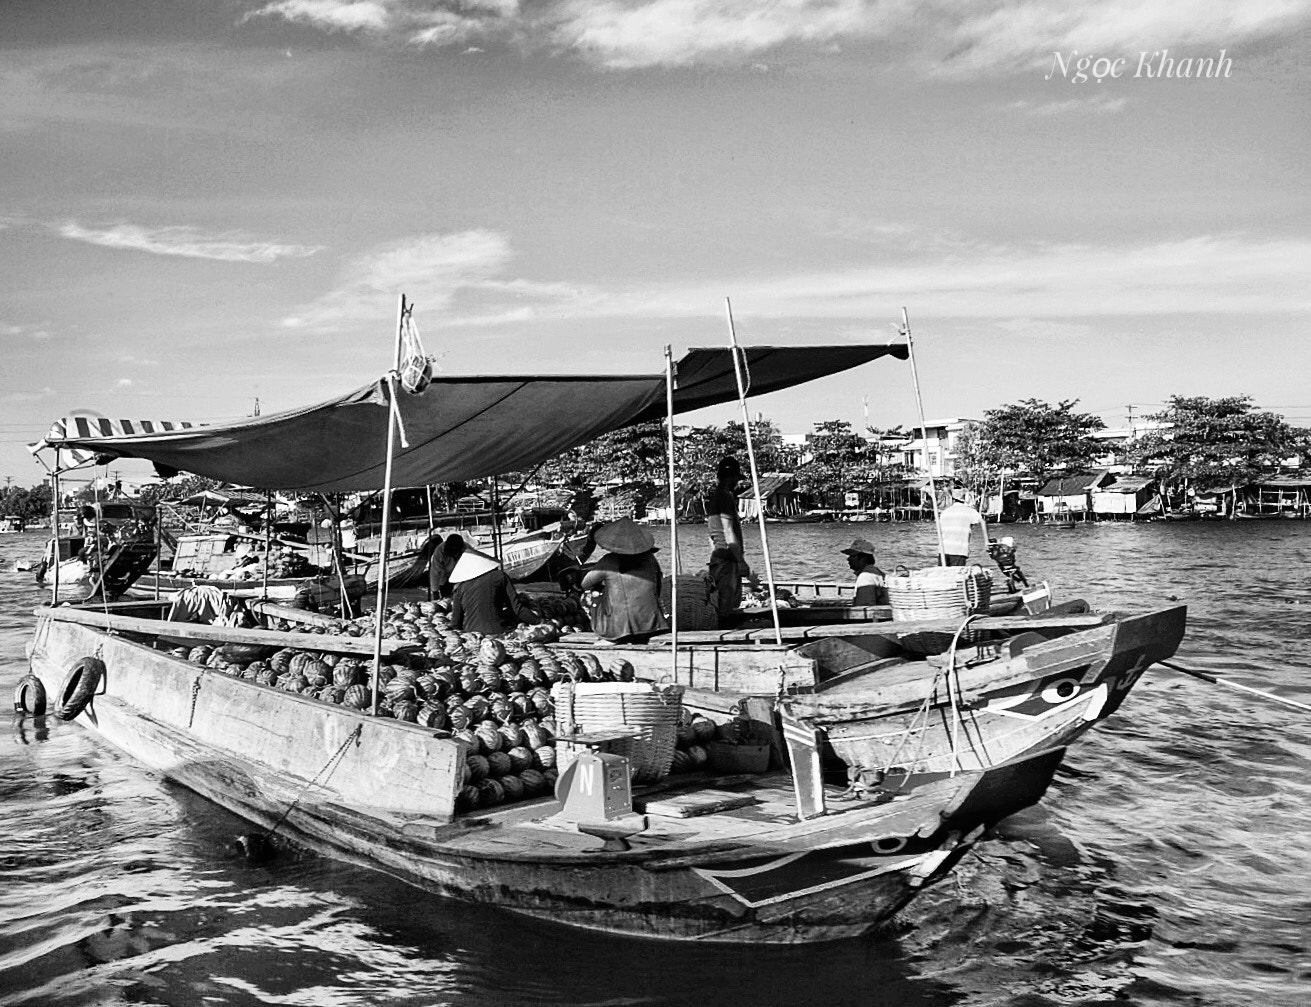 Sony a7 II sample photo. Cai rang floating market on vietnam tien giang river - chợ nổi cái răng trên sông tiền giang photography